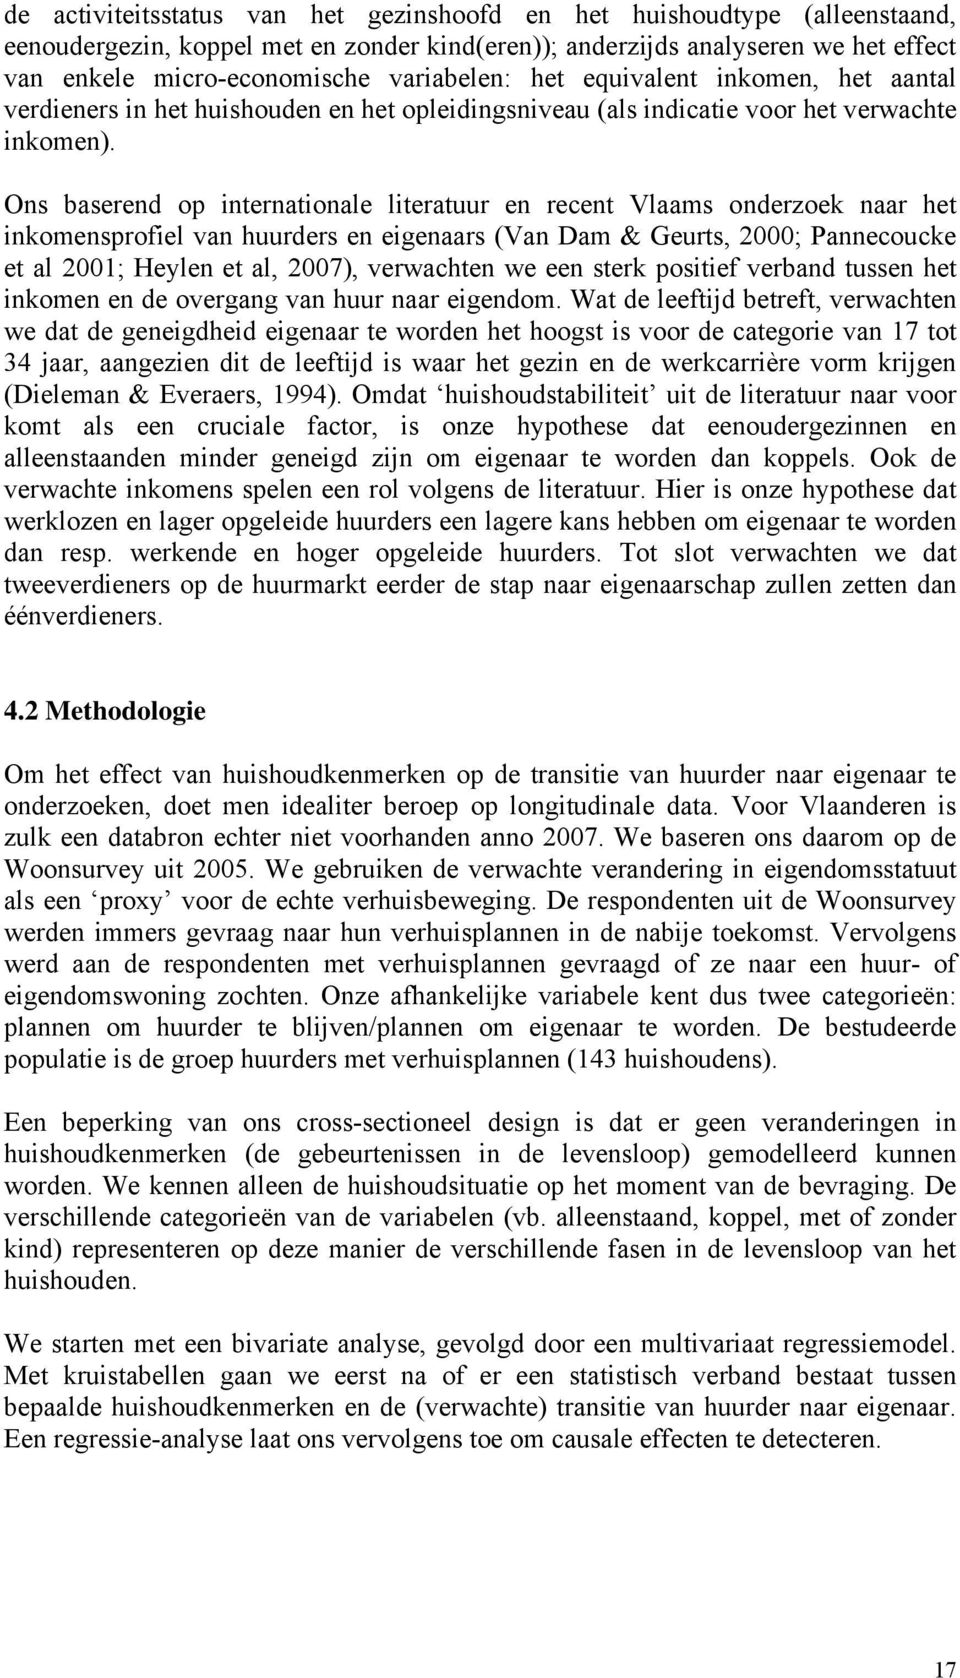 Ons baserend op internationale literatuur en recent Vlaams onderzoek naar het inkomensprofiel van huurders en eigenaars (Van Dam & Geurts, 2000; Pannecoucke et al 2001; Heylen et al, 2007),